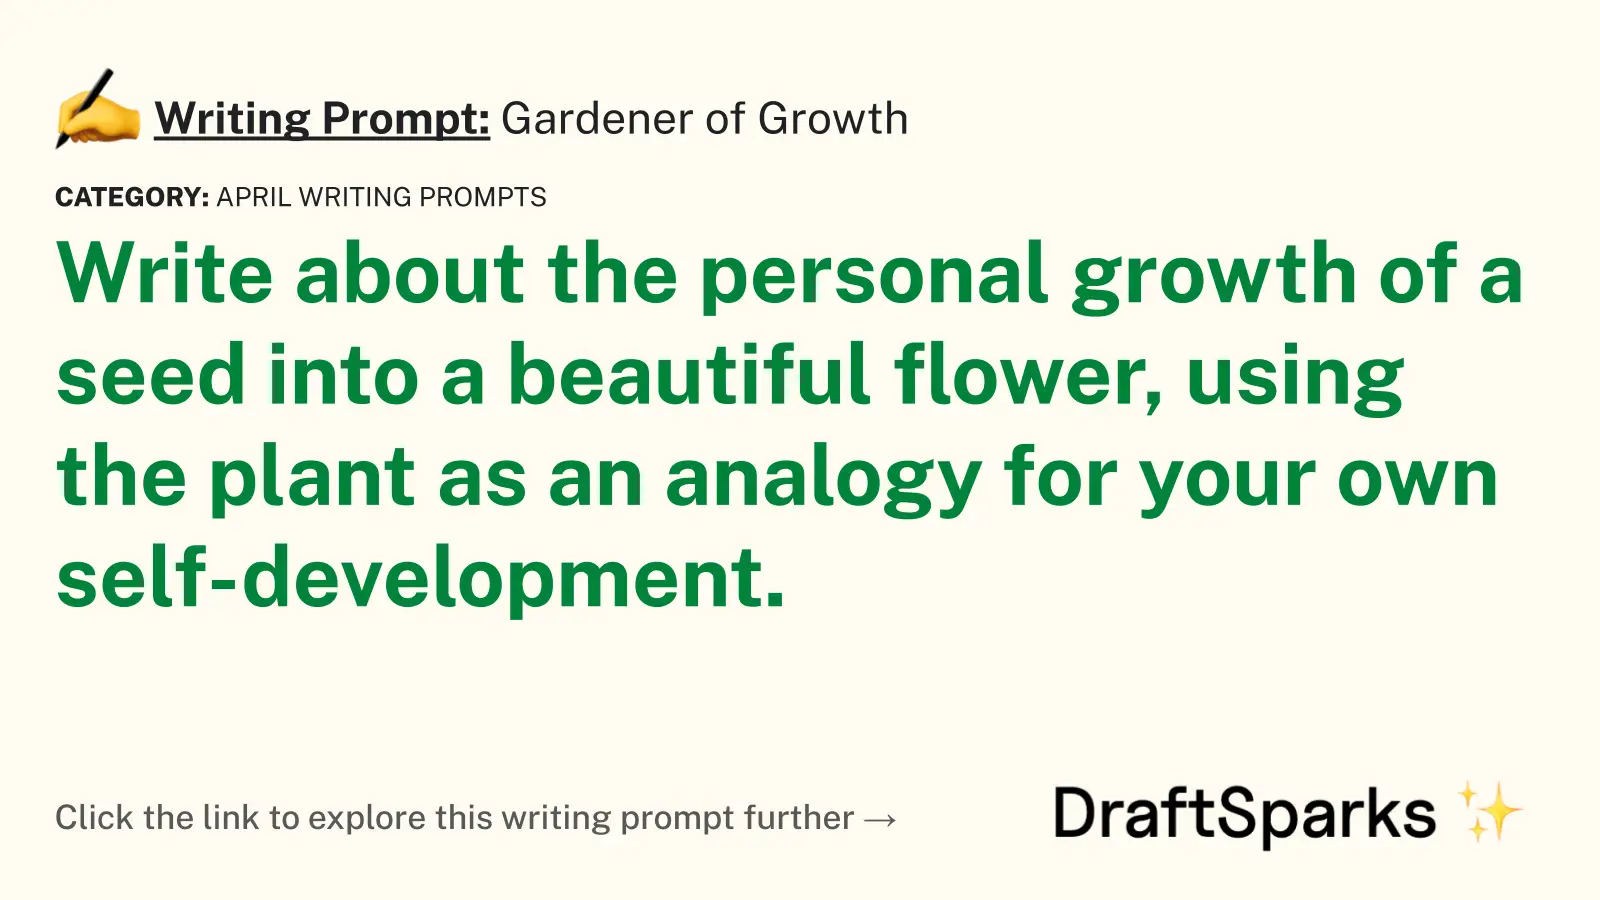 Gardener of Growth